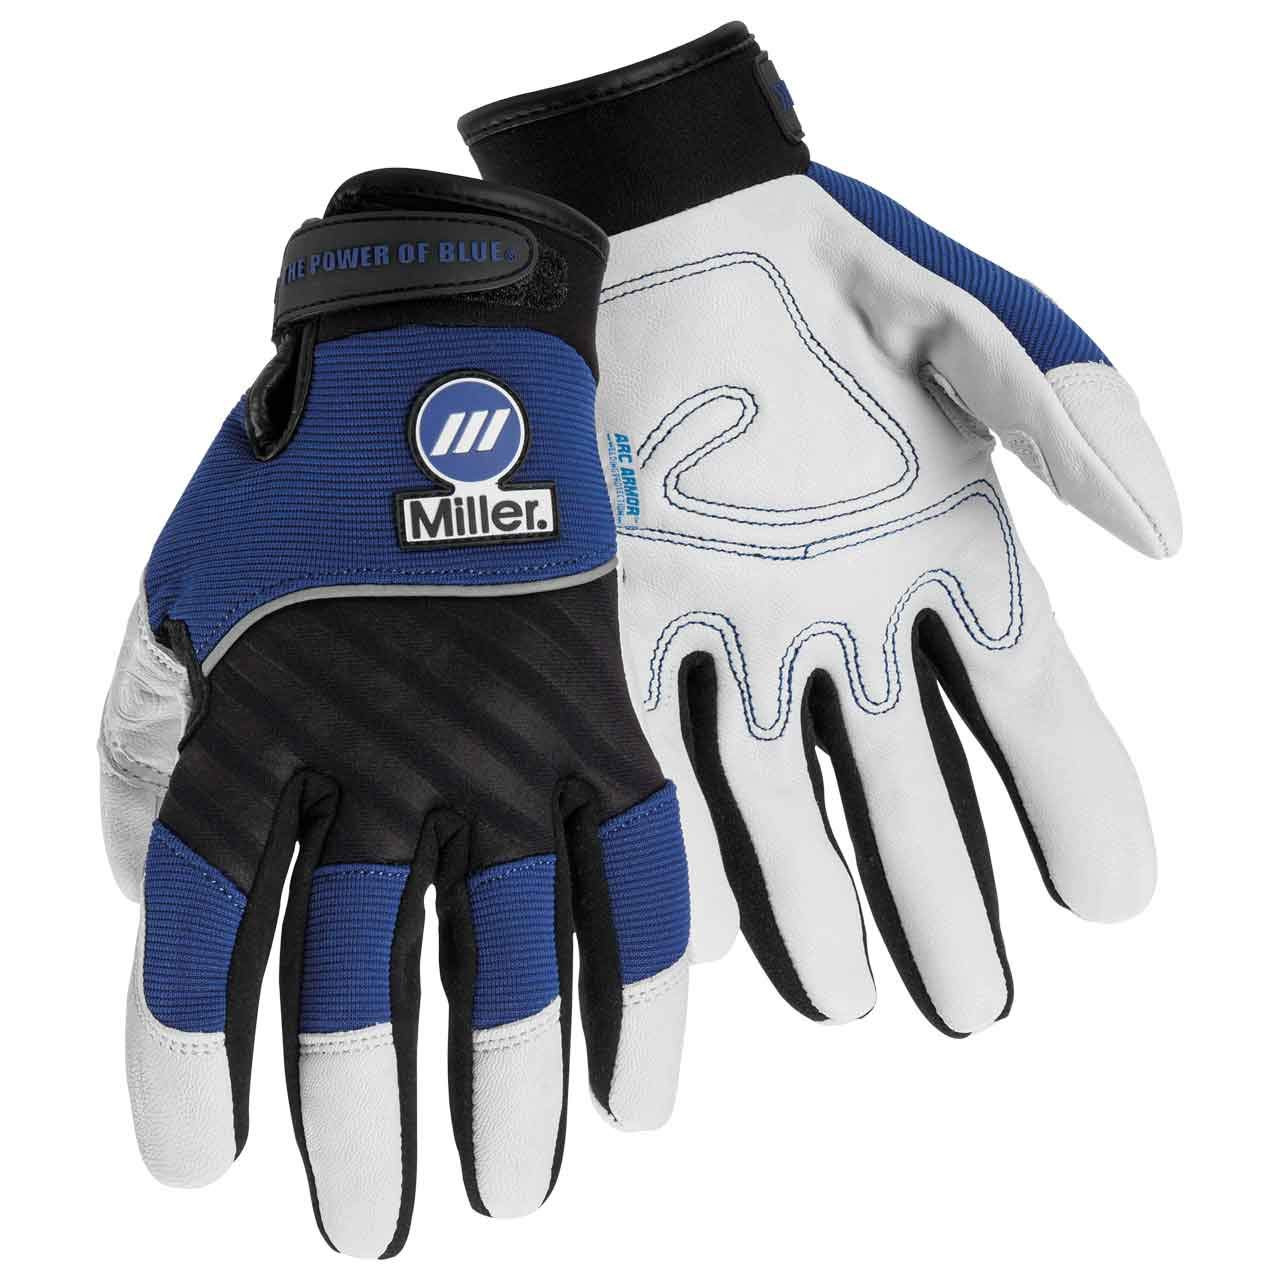 Miller Metal Working Gloves - Large